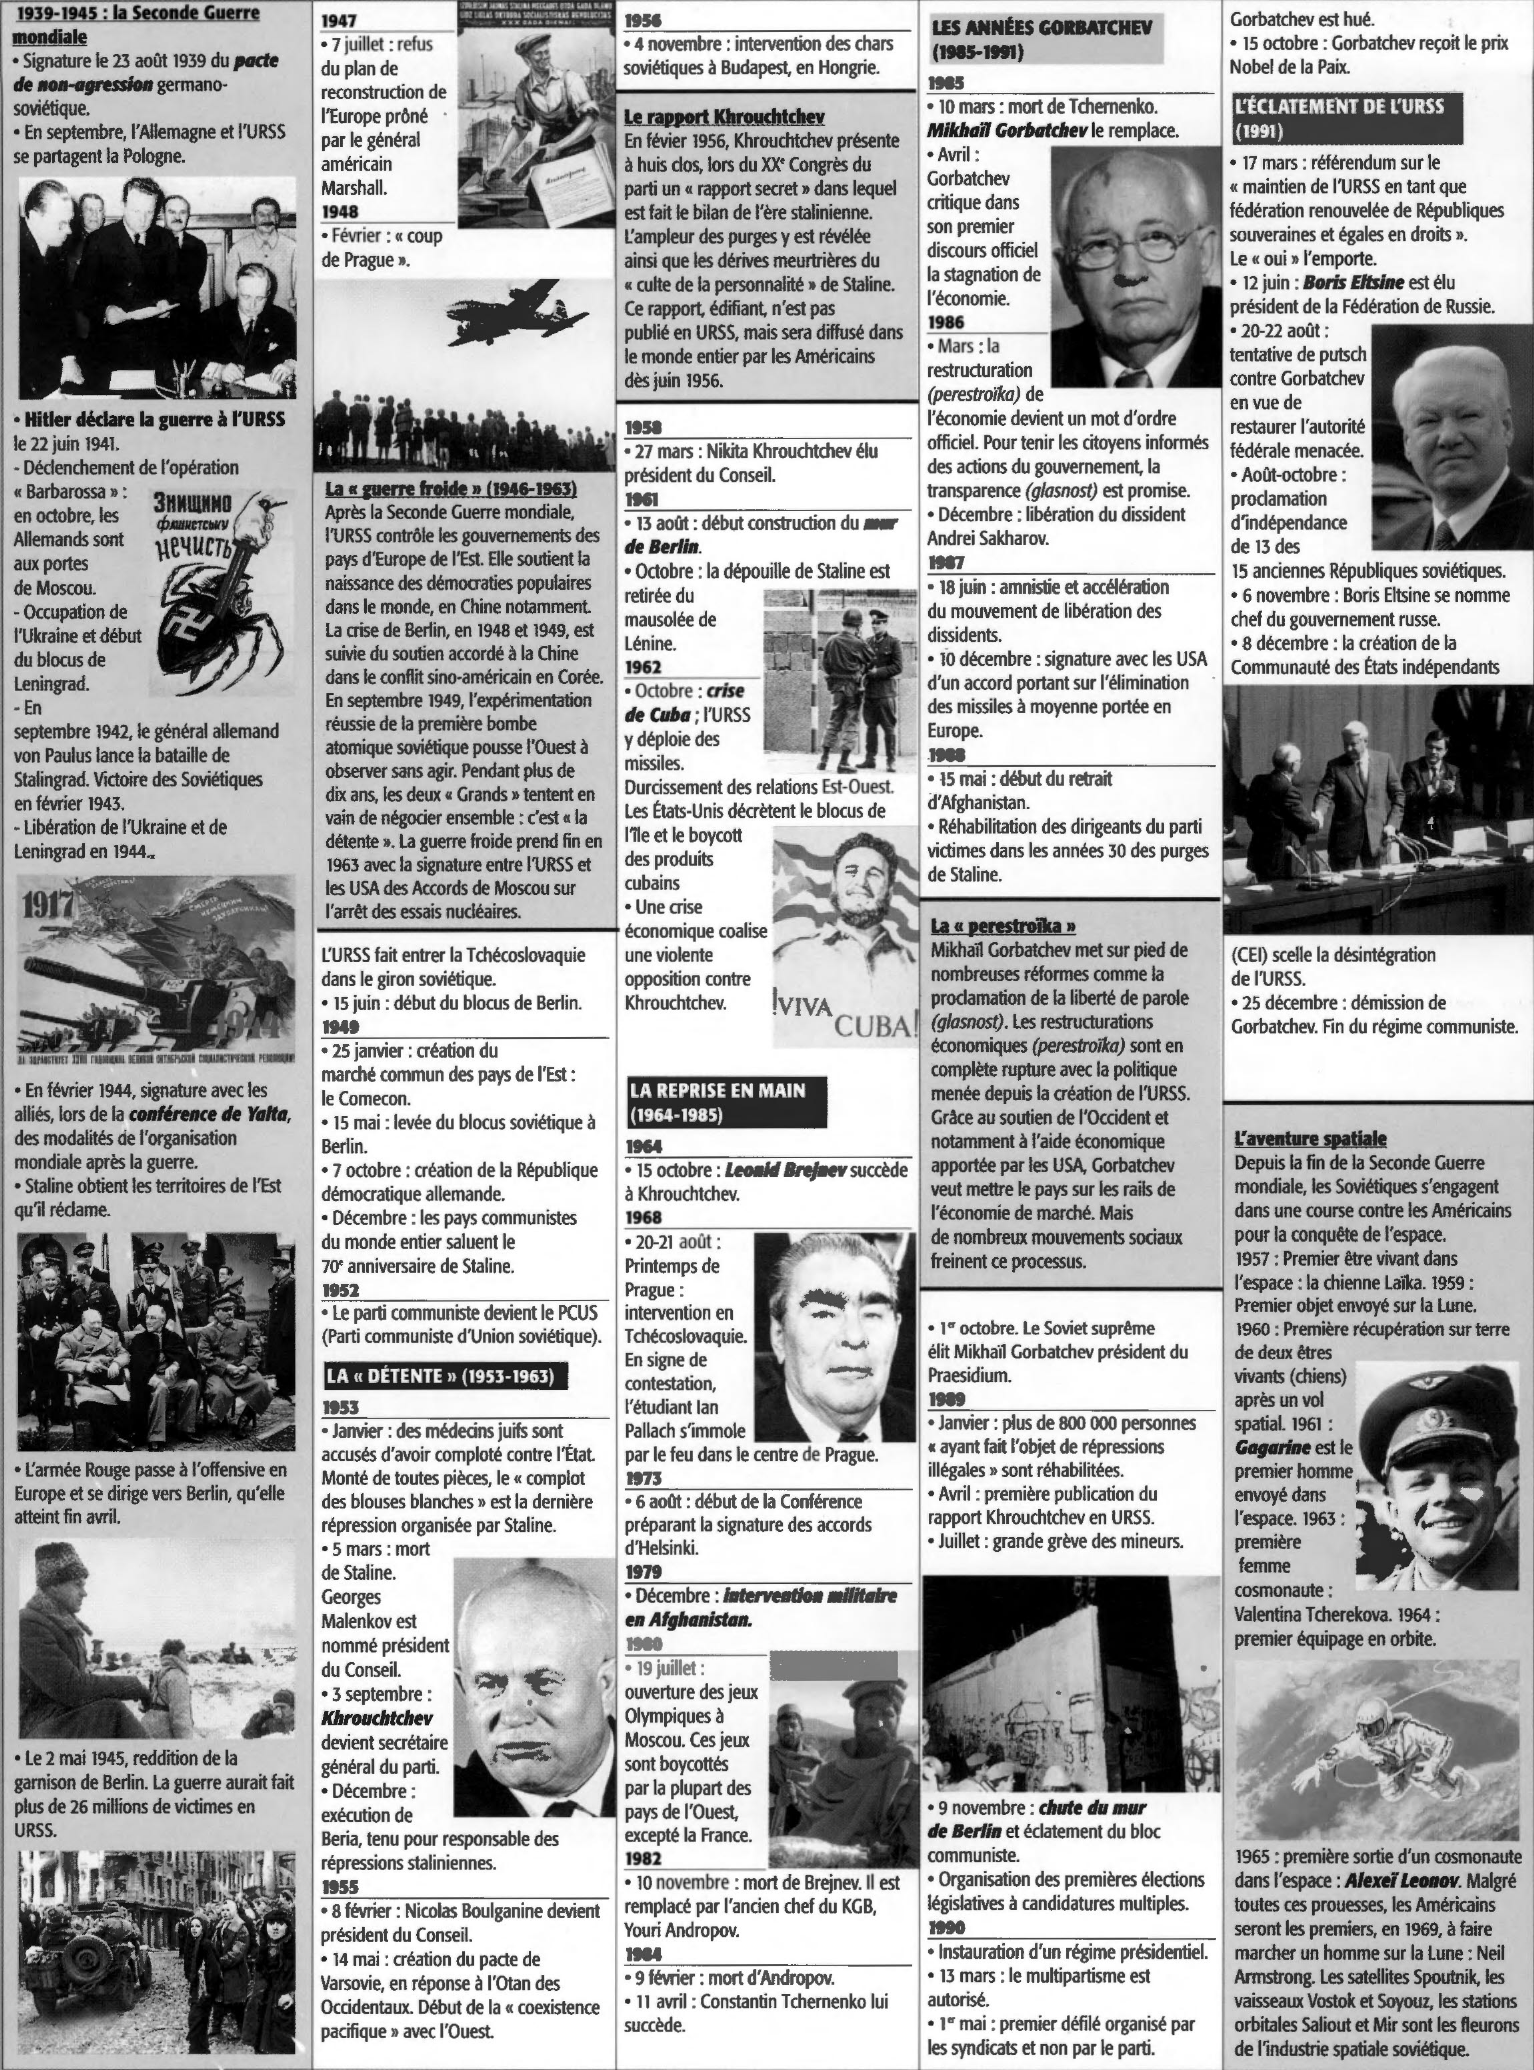 Prévisualisation du document De 1917 à 1991 : Histoire de l'URSS